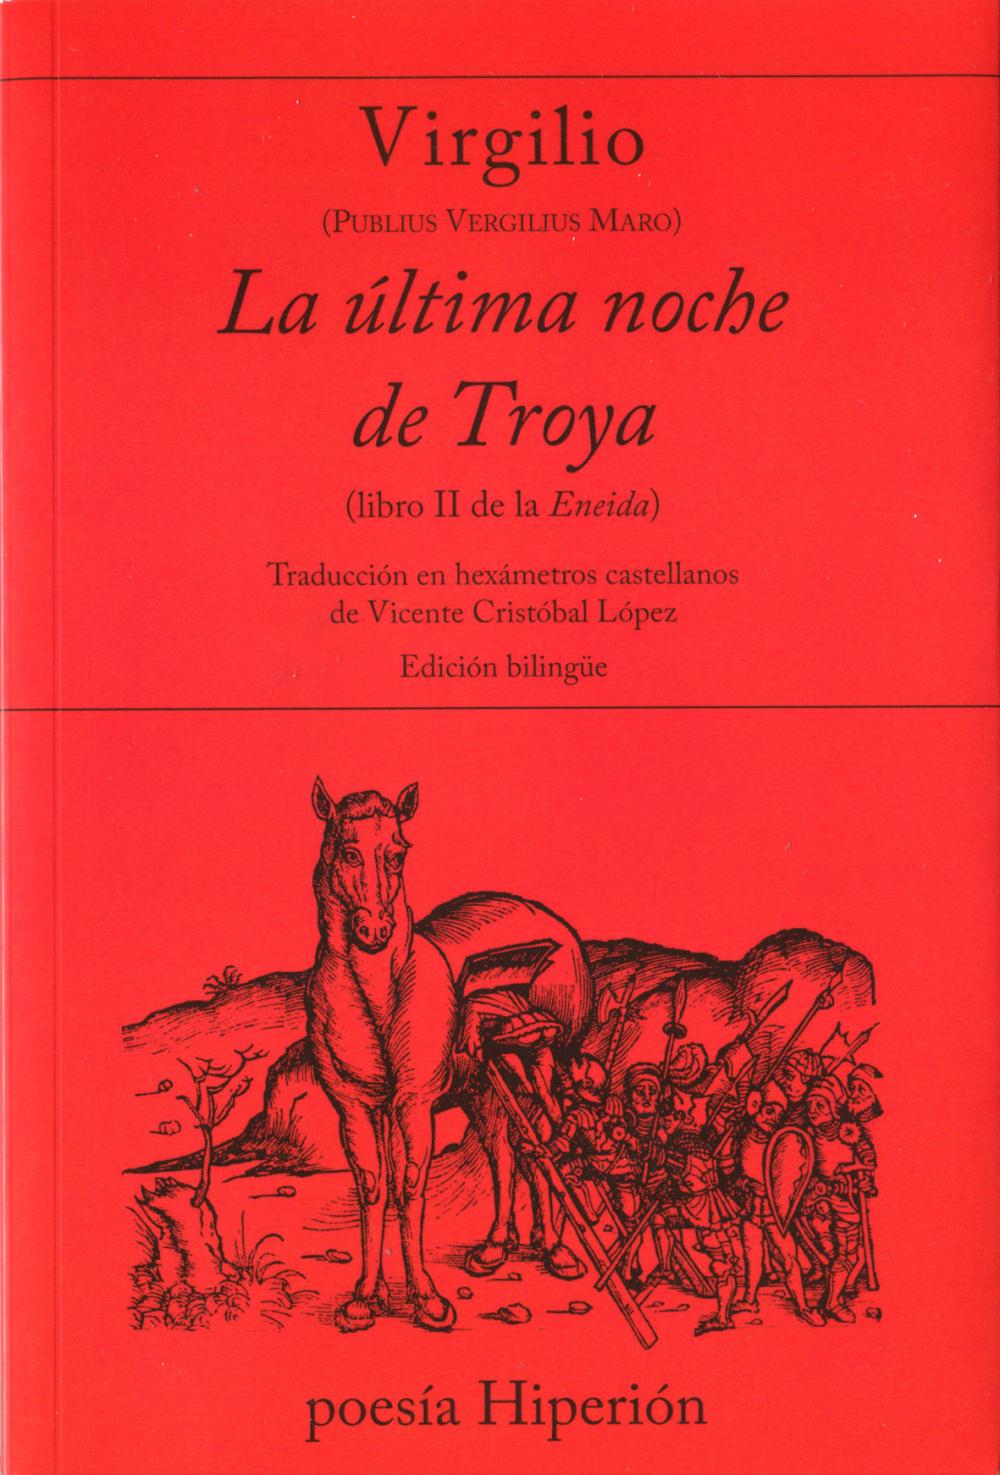 La última noche de Troya (libro II de la Eneida)